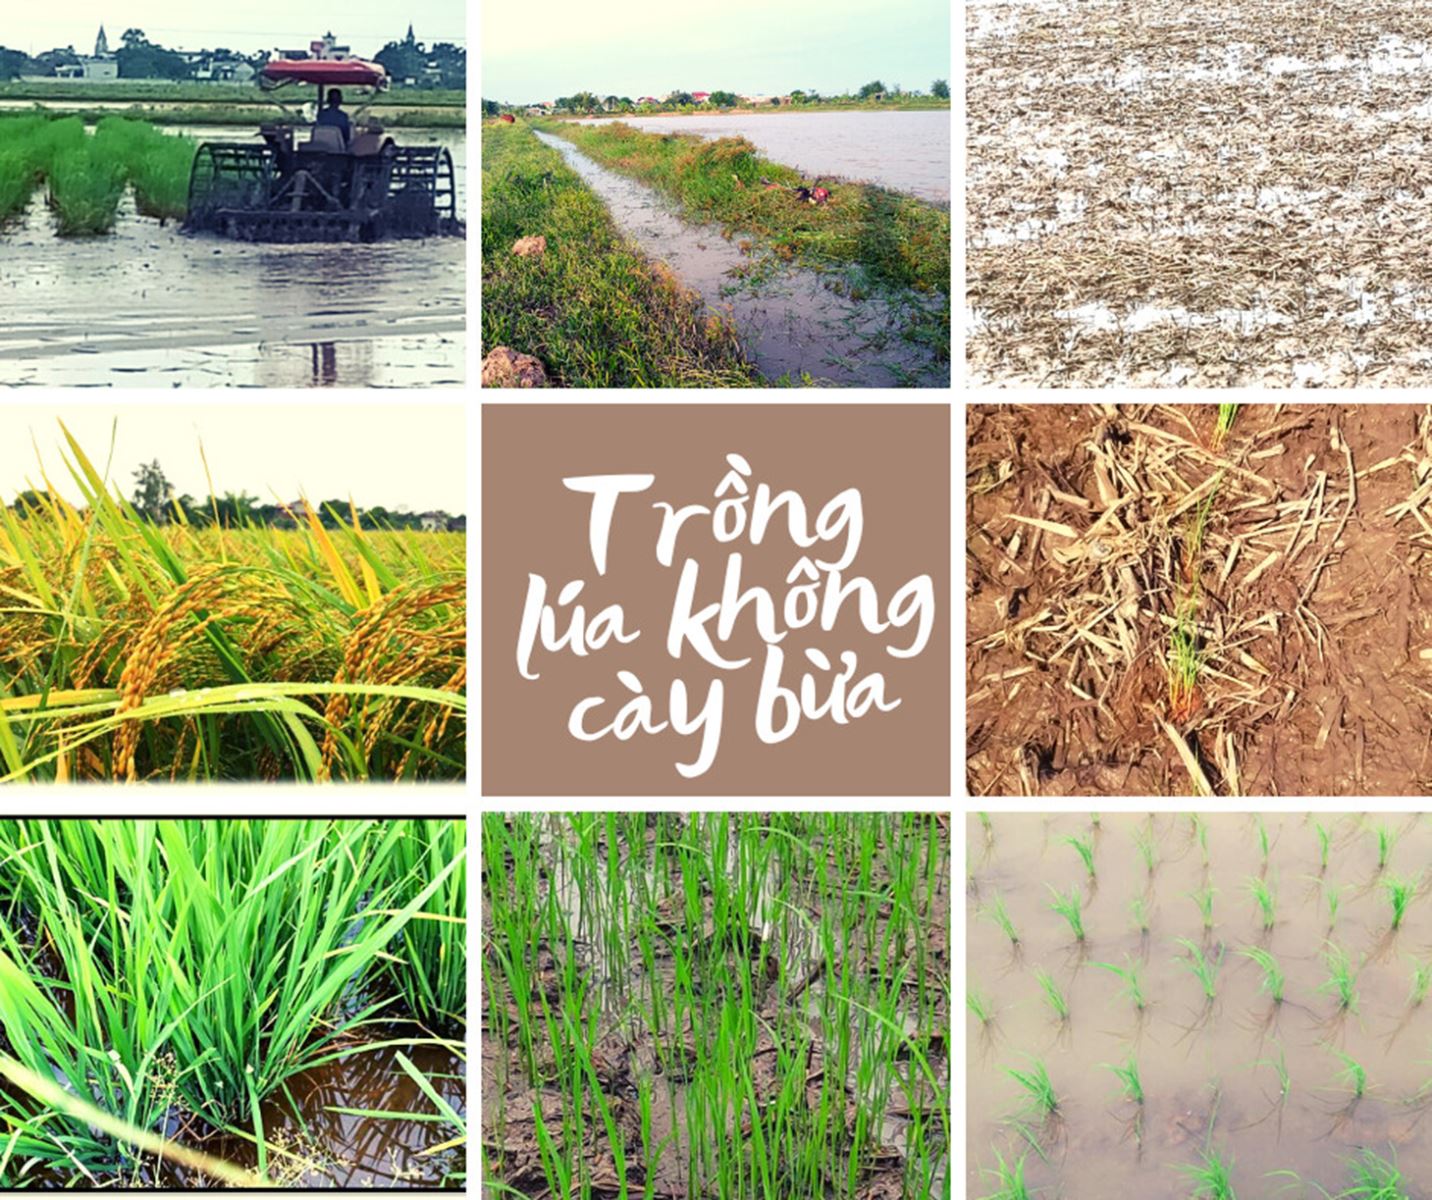 Quy trình trồng lúa không cày bừa tuần hoàn dinh dưỡng tại chỗ có kỹ thuật phù hợp với đặc thù thổ nhưỡng và khí hậu của Việt Nam.